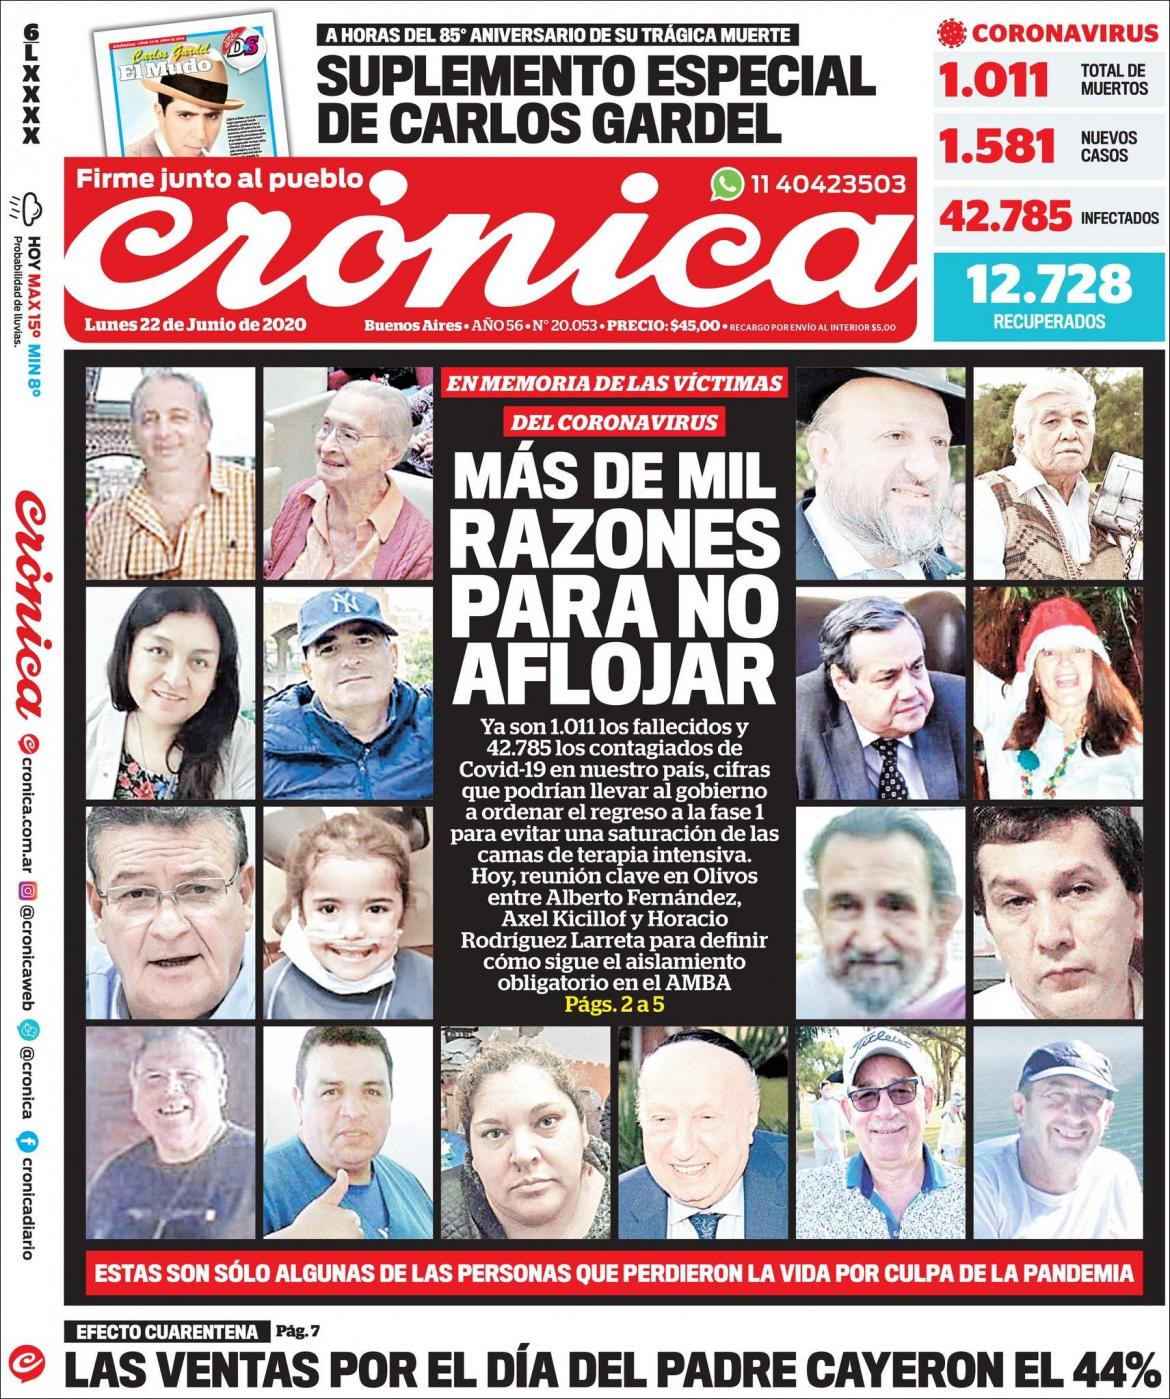 Tapas de diarios, Cronica, lunes 22 de junio de 2020